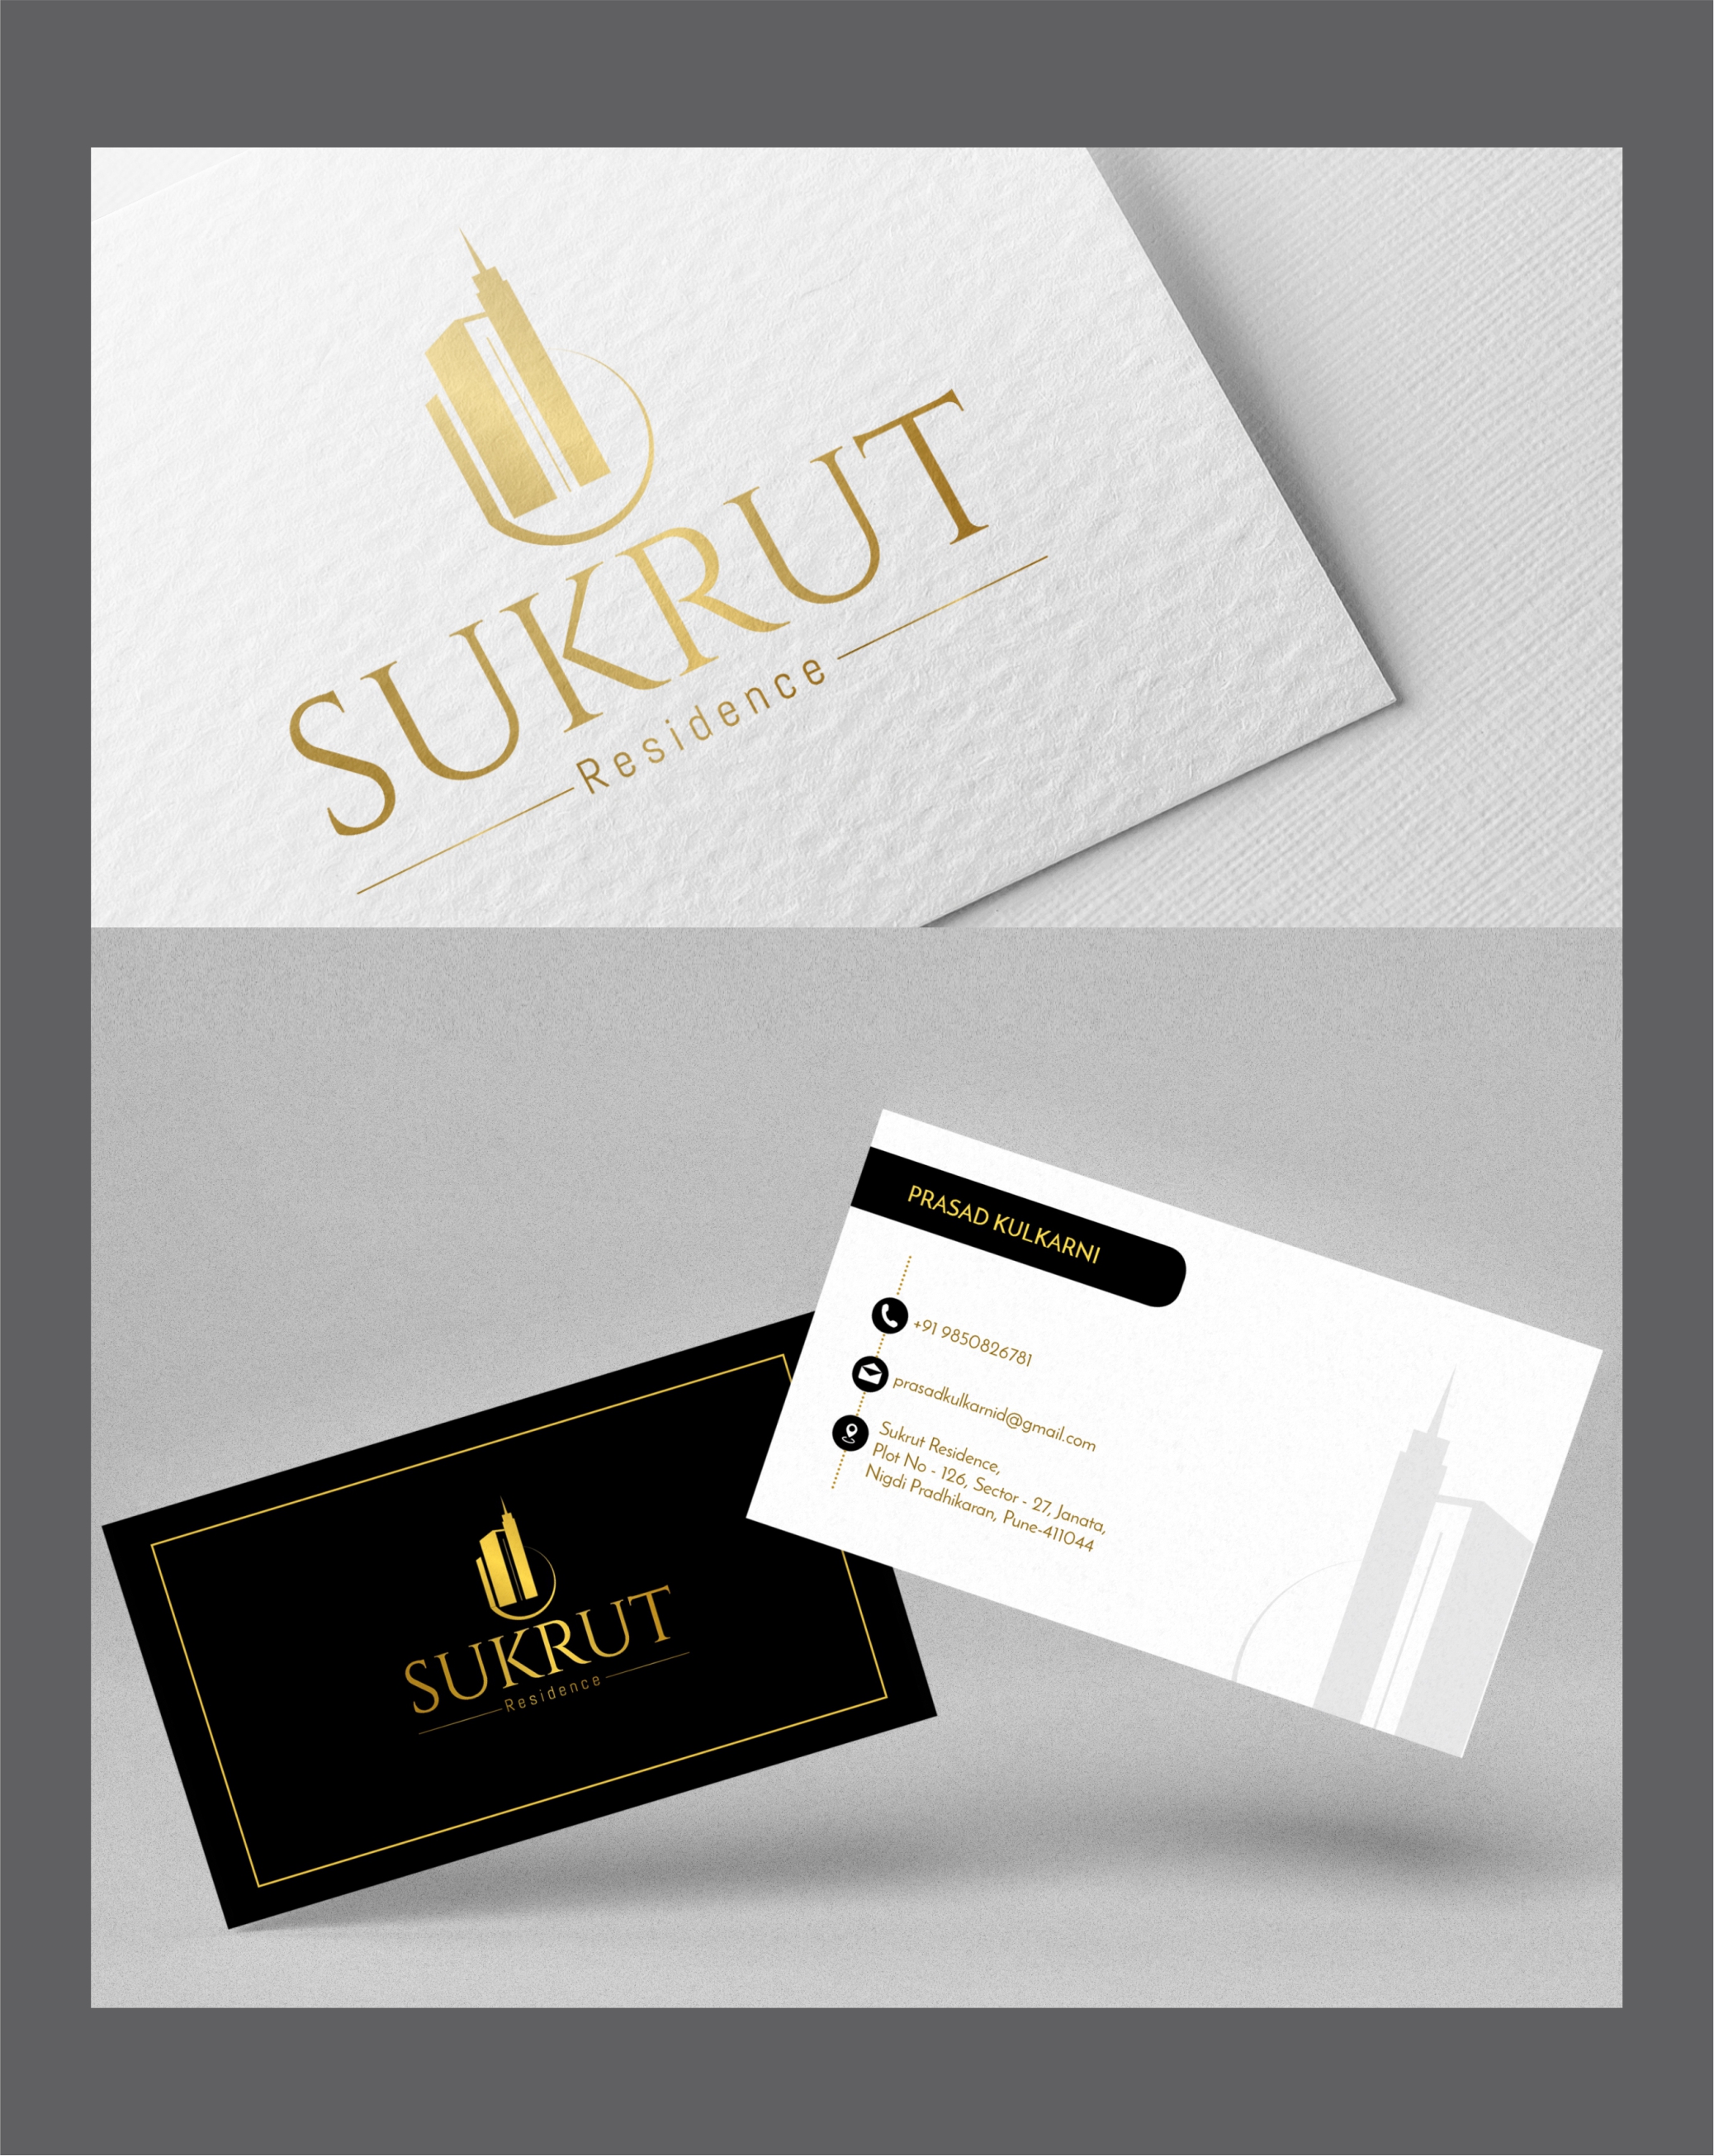 sukrut logo and visiting card